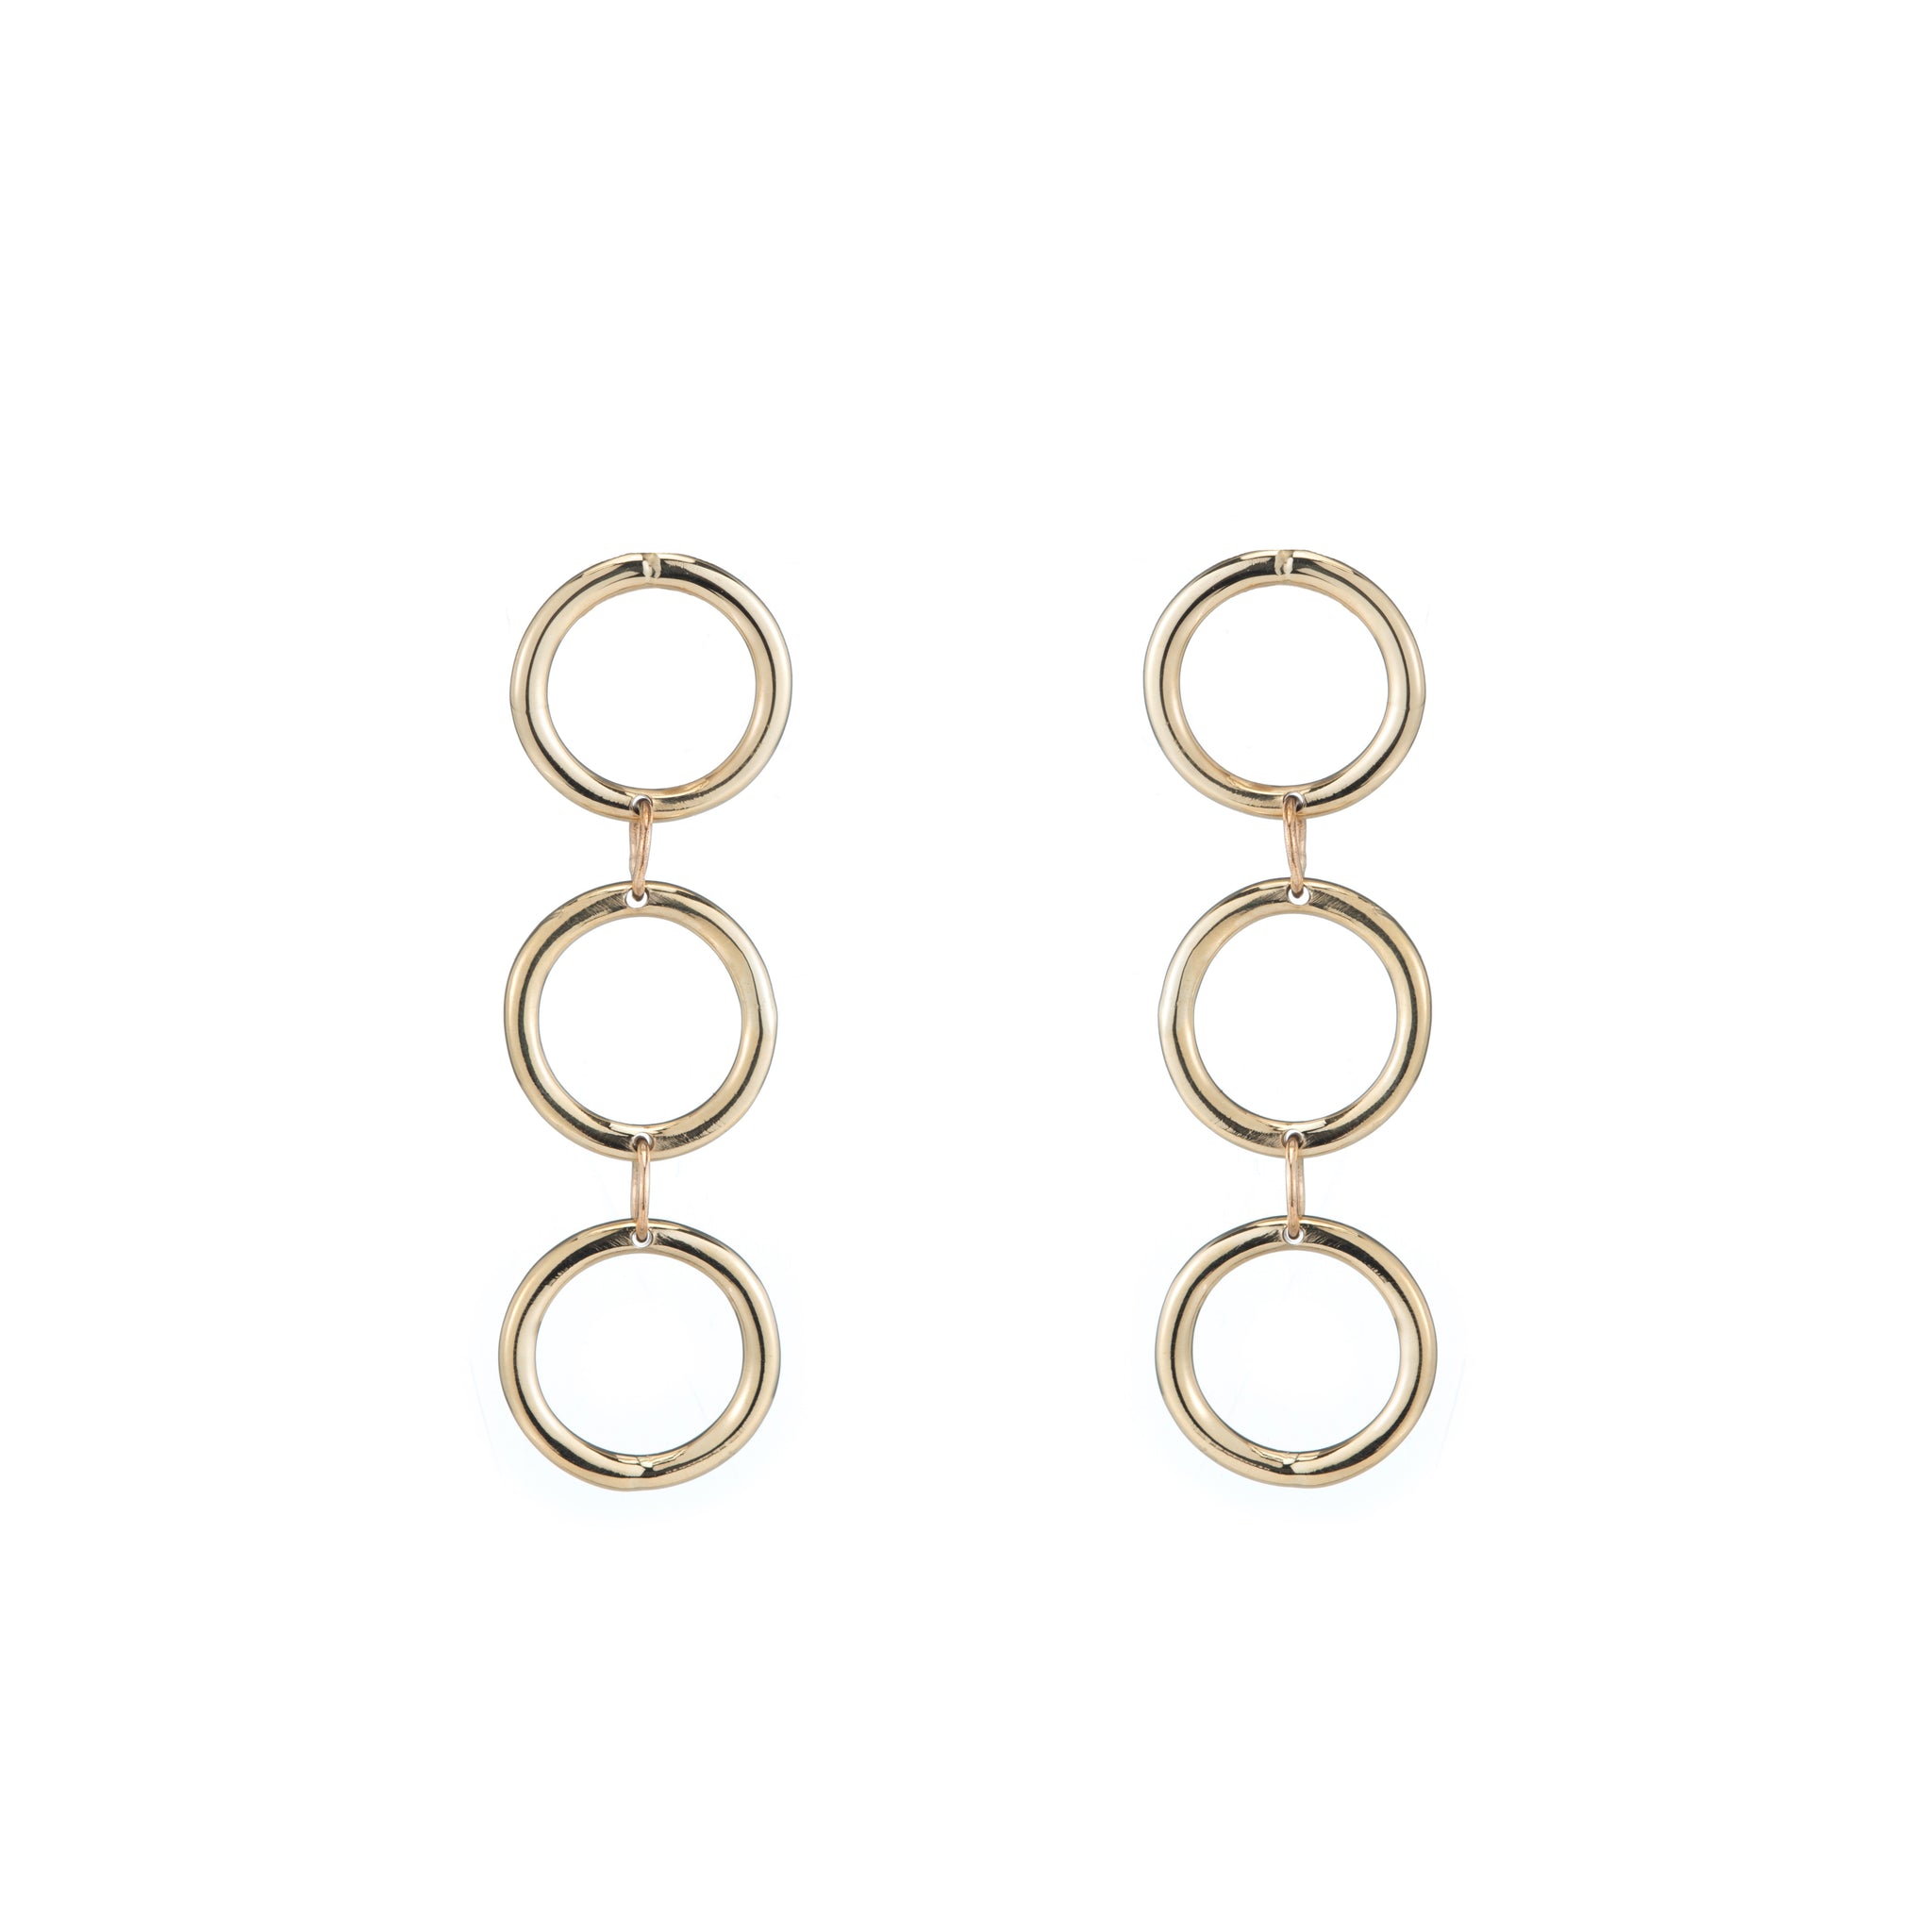 recycled gold triple hoop earrings statement earrings